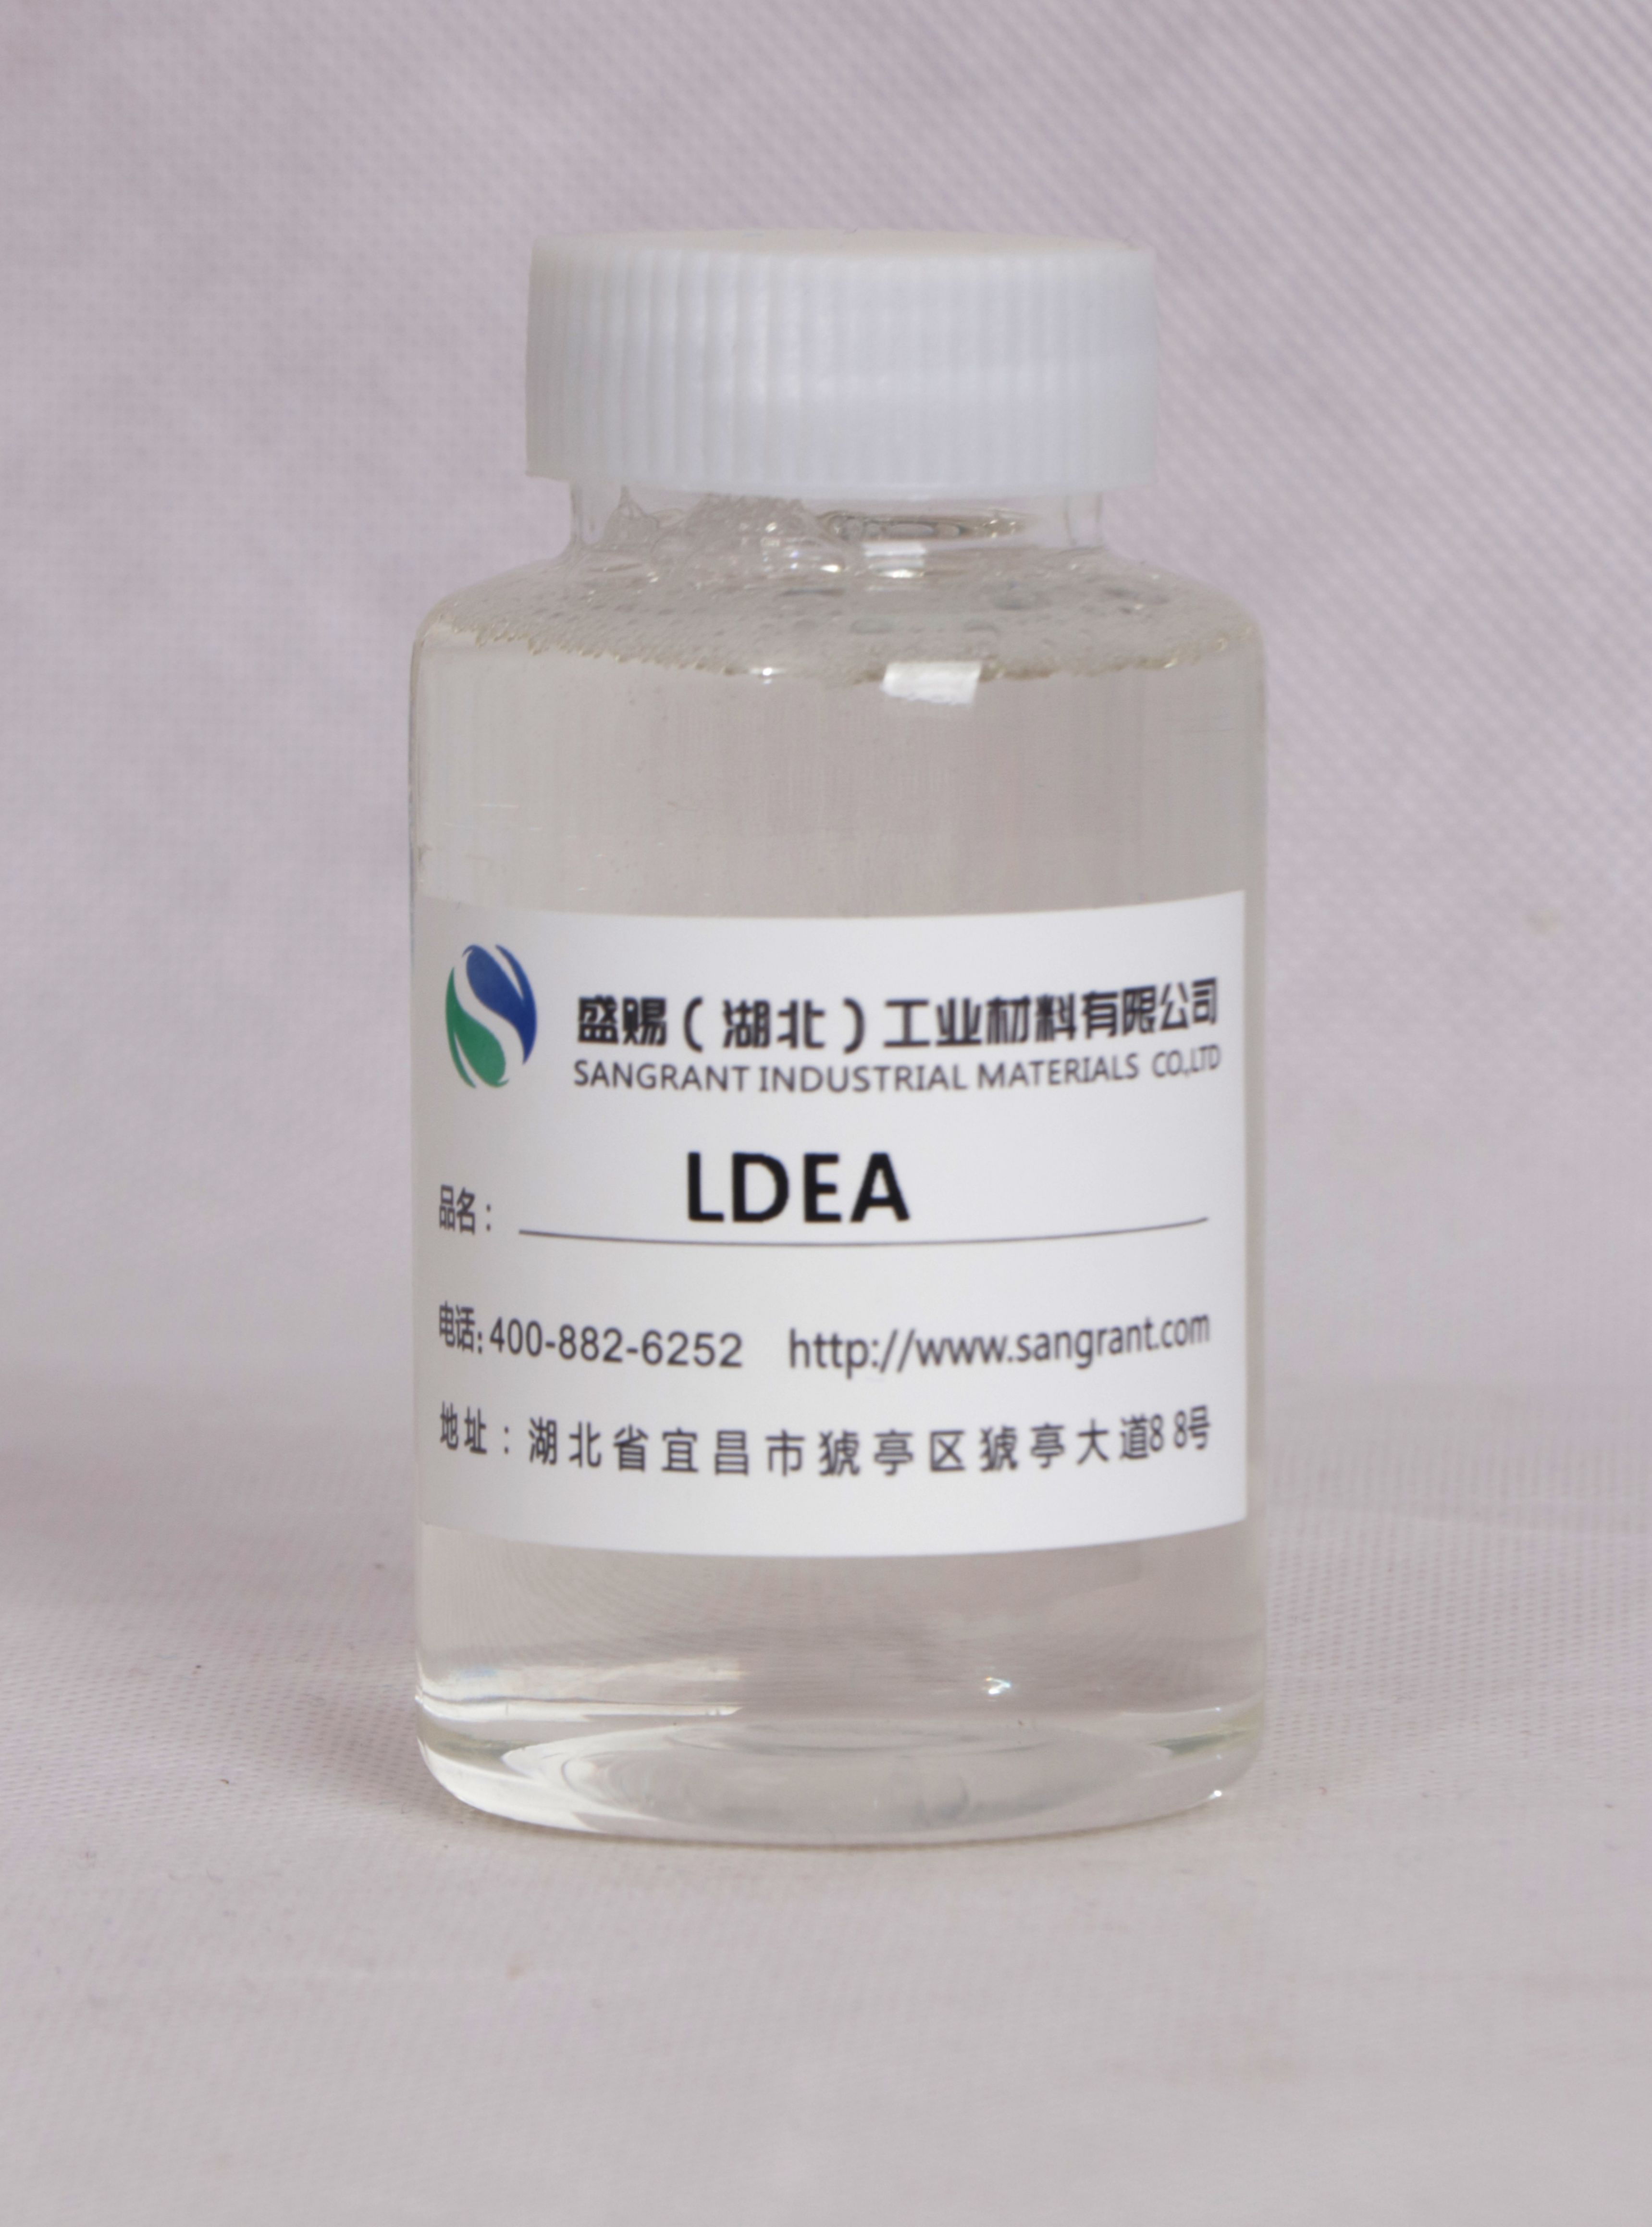 盛赐 月桂酸二乙醇酰胺 LDEA日化增稠、防锈洗涤剂 质量稳定